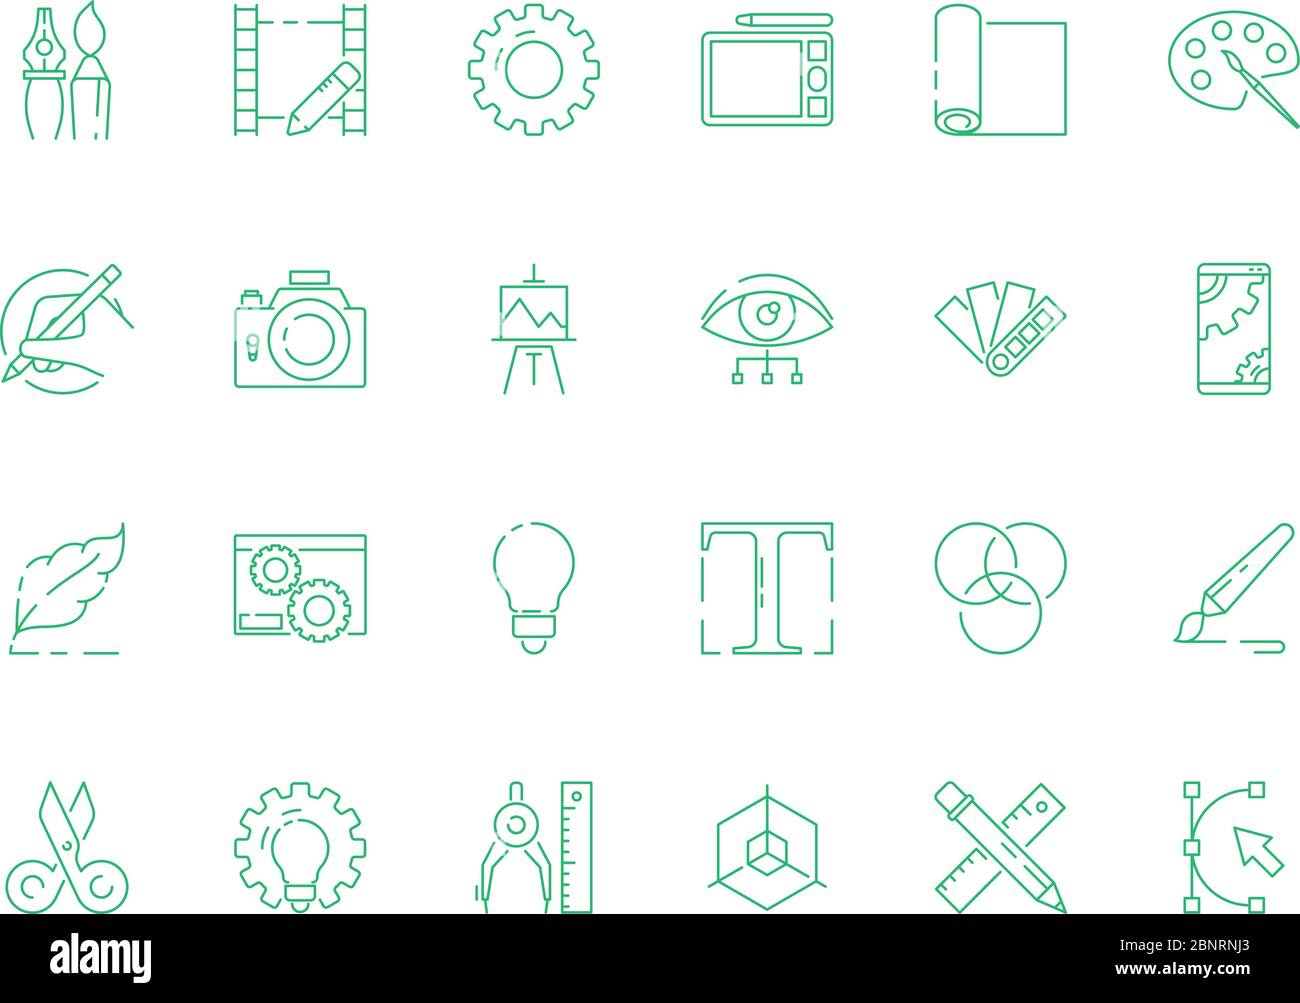 Icona Strumenti di progettazione. Grafica web design tipografia strumenti artistici creativi per artisti e designer simboli vettoriali sottili Illustrazione Vettoriale